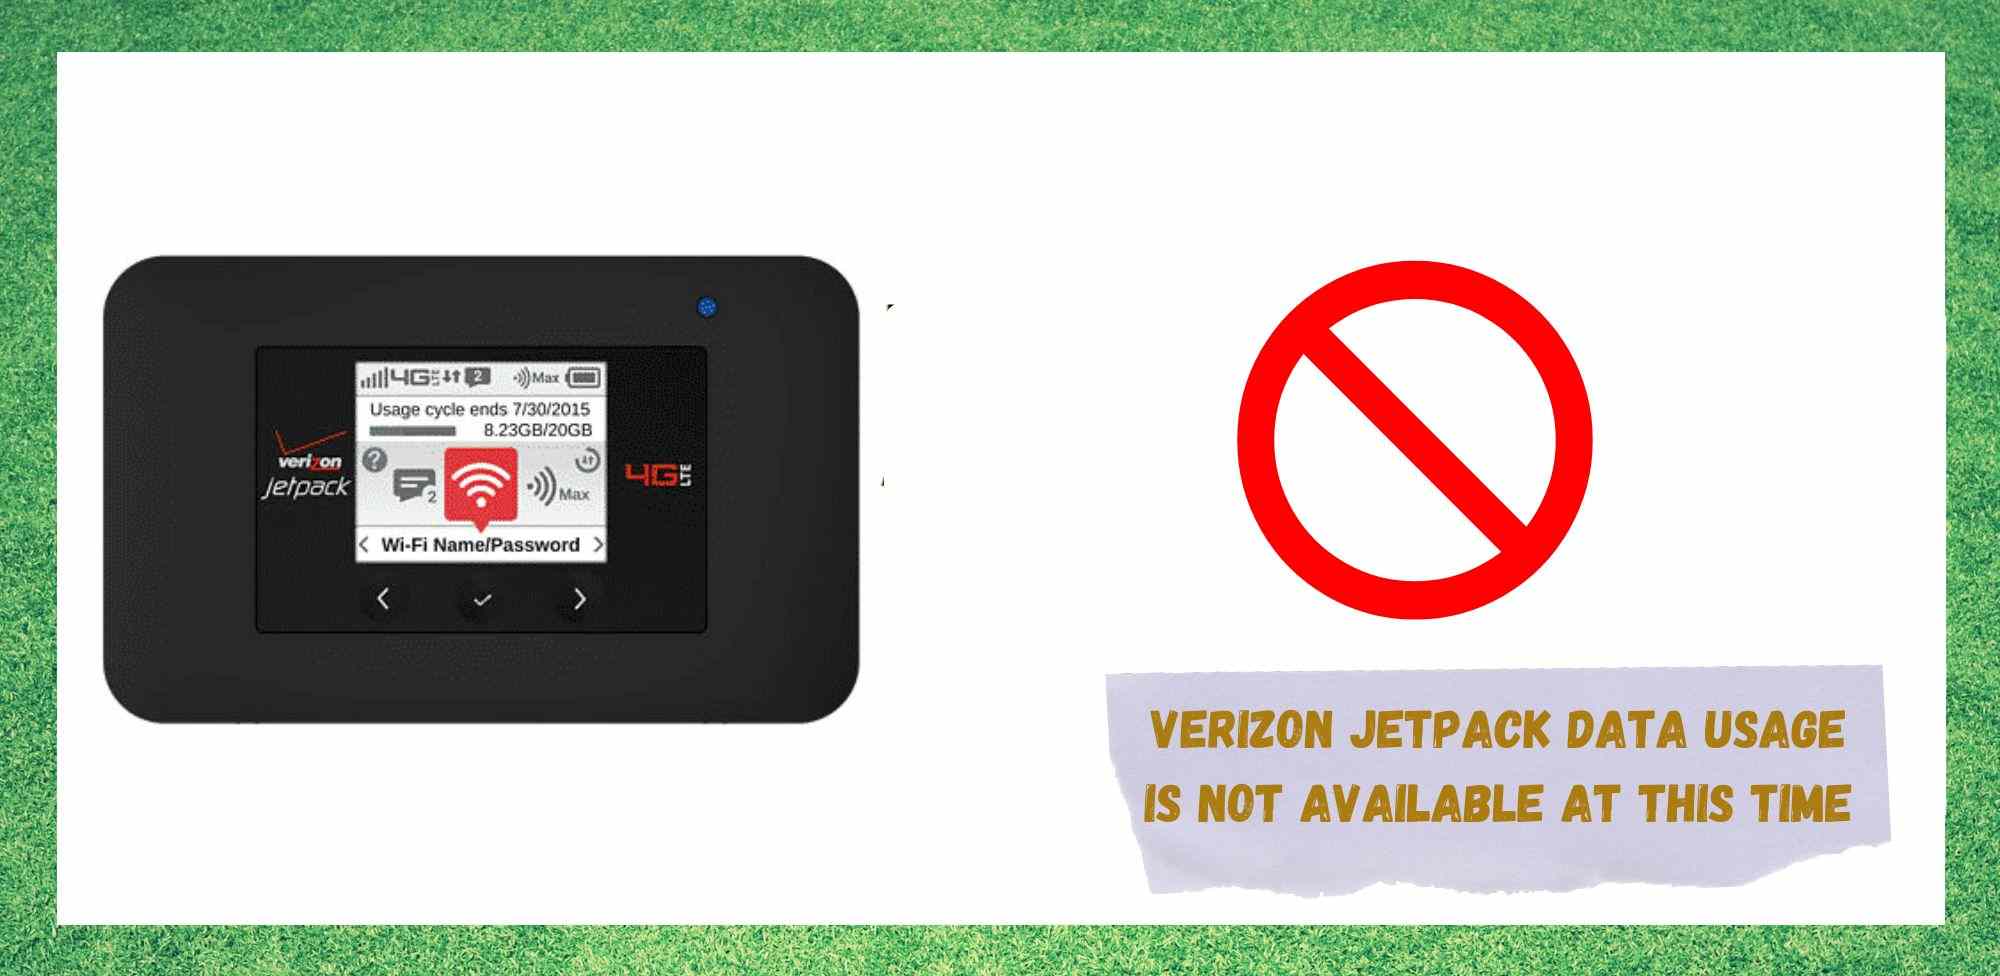 7 วิธีในการแก้ไขการใช้ข้อมูล Verizon Jetpack ไม่สามารถใช้งานได้ในขณะนี้